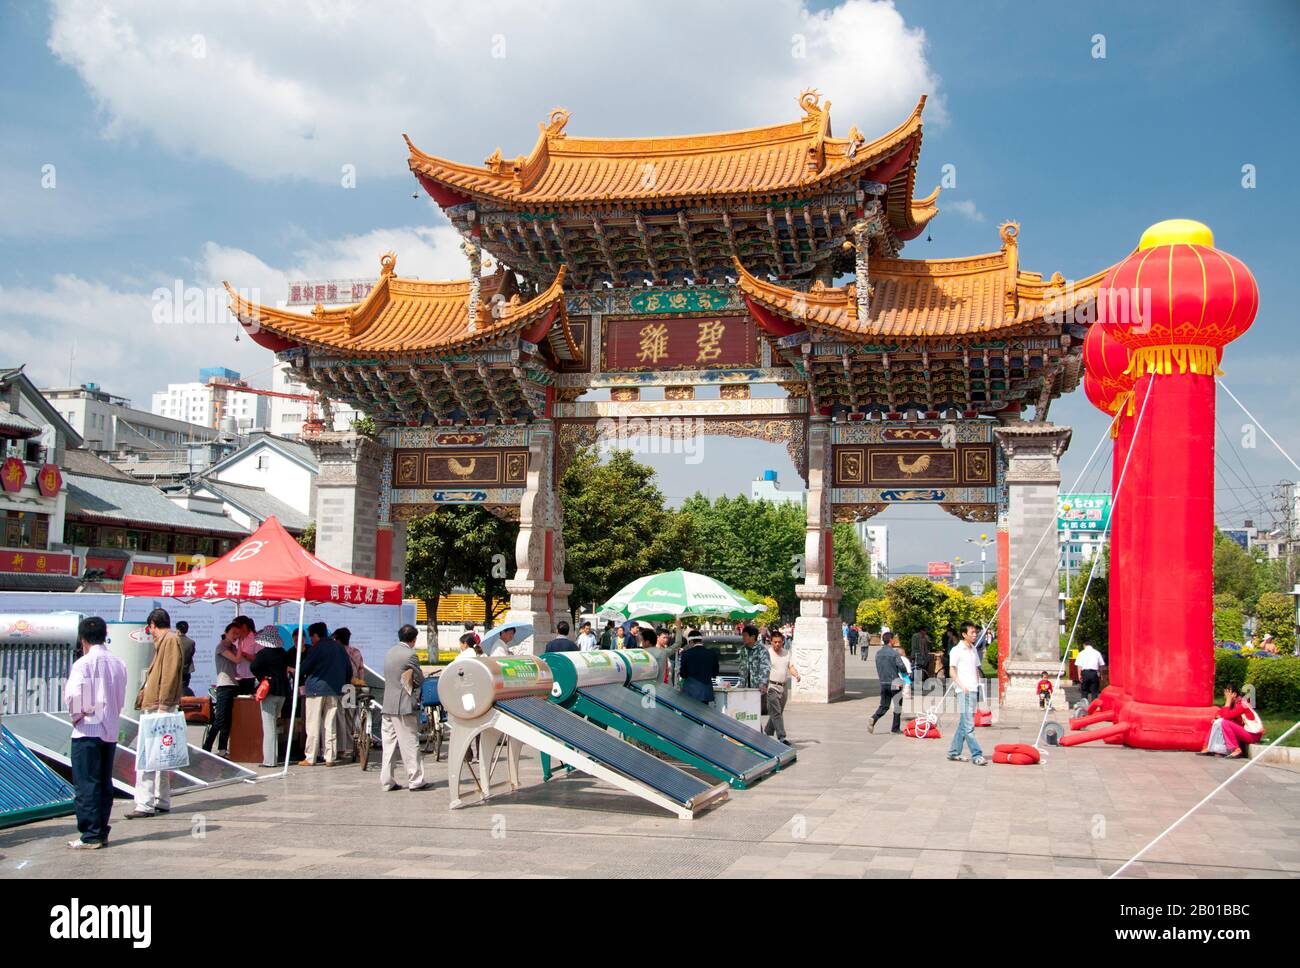 China: Verkauf von Solarmodulen am Jinma Biji Platz, im Zentrum von Kunming, Provinz Yunnan. Die Torbögen von Jinma Biji oder Golden Horse Jade Rooster stehen im Herzen des kommerziellen Kunming. Das goldene Pferd und das grüne Huhn (Hahn) sind Symbole der Stadt Kunming und erscheinen in seinem Emblem. Am Ufer des Dian-Sees erbaut und von Kalksteinbergen umgeben, war Kunming eine wichtige alte Handelsroute zwischen Tibet, China und Südostasien. Die Stadt, damals Yunnanfu genannt, litt unter den Händen des Rebellenführers Du Wenxiu, des Sultans von Dali, der die Stadt mehrmals attackierte und belagerte. Stockfoto